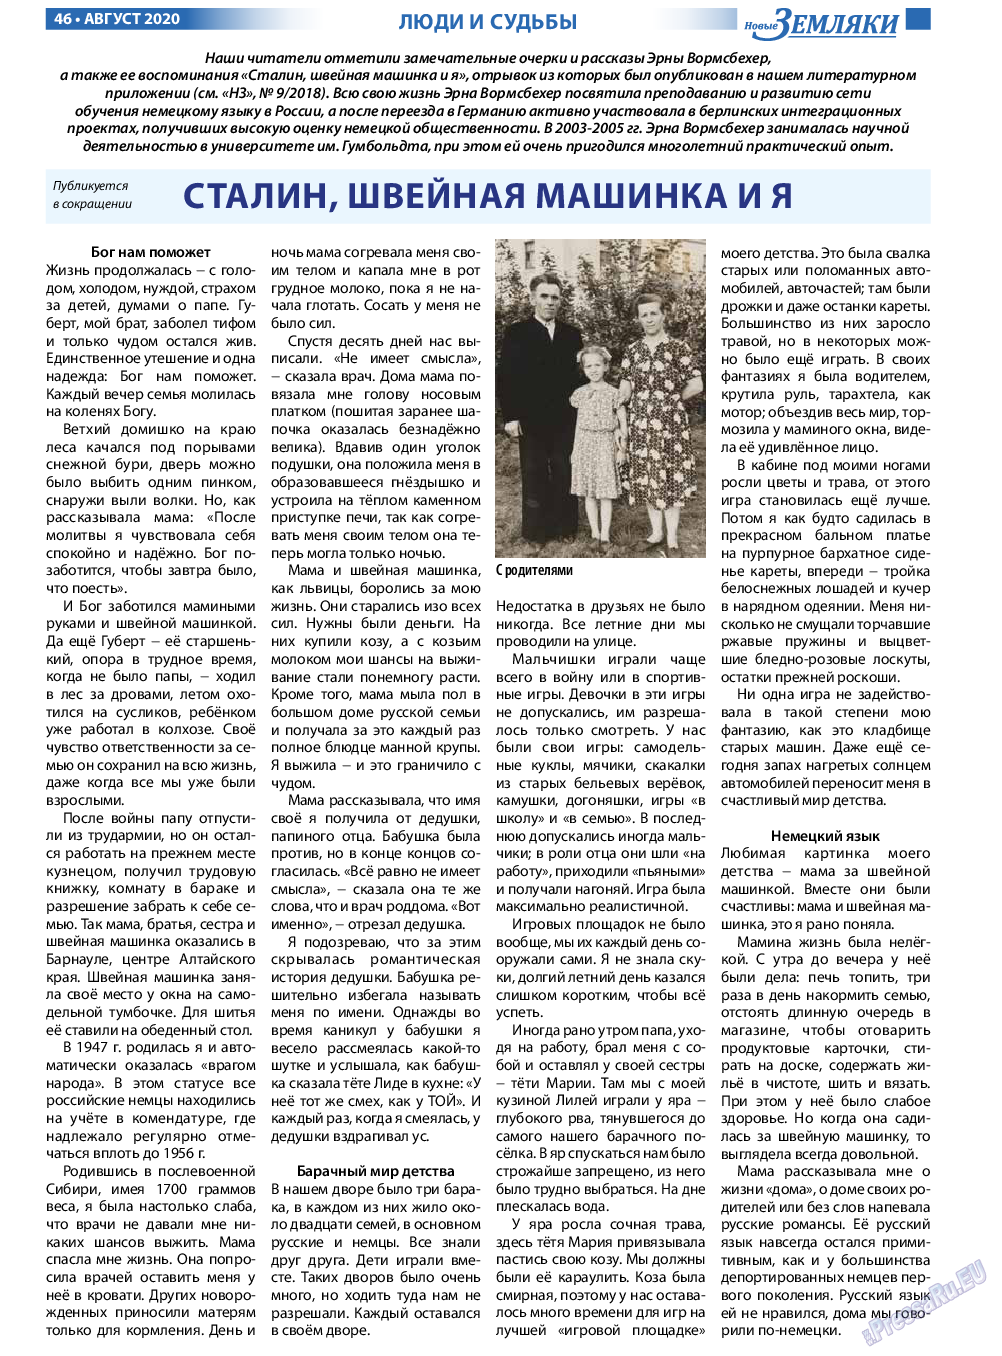 Новые Земляки, газета. 2020 №8 стр.46